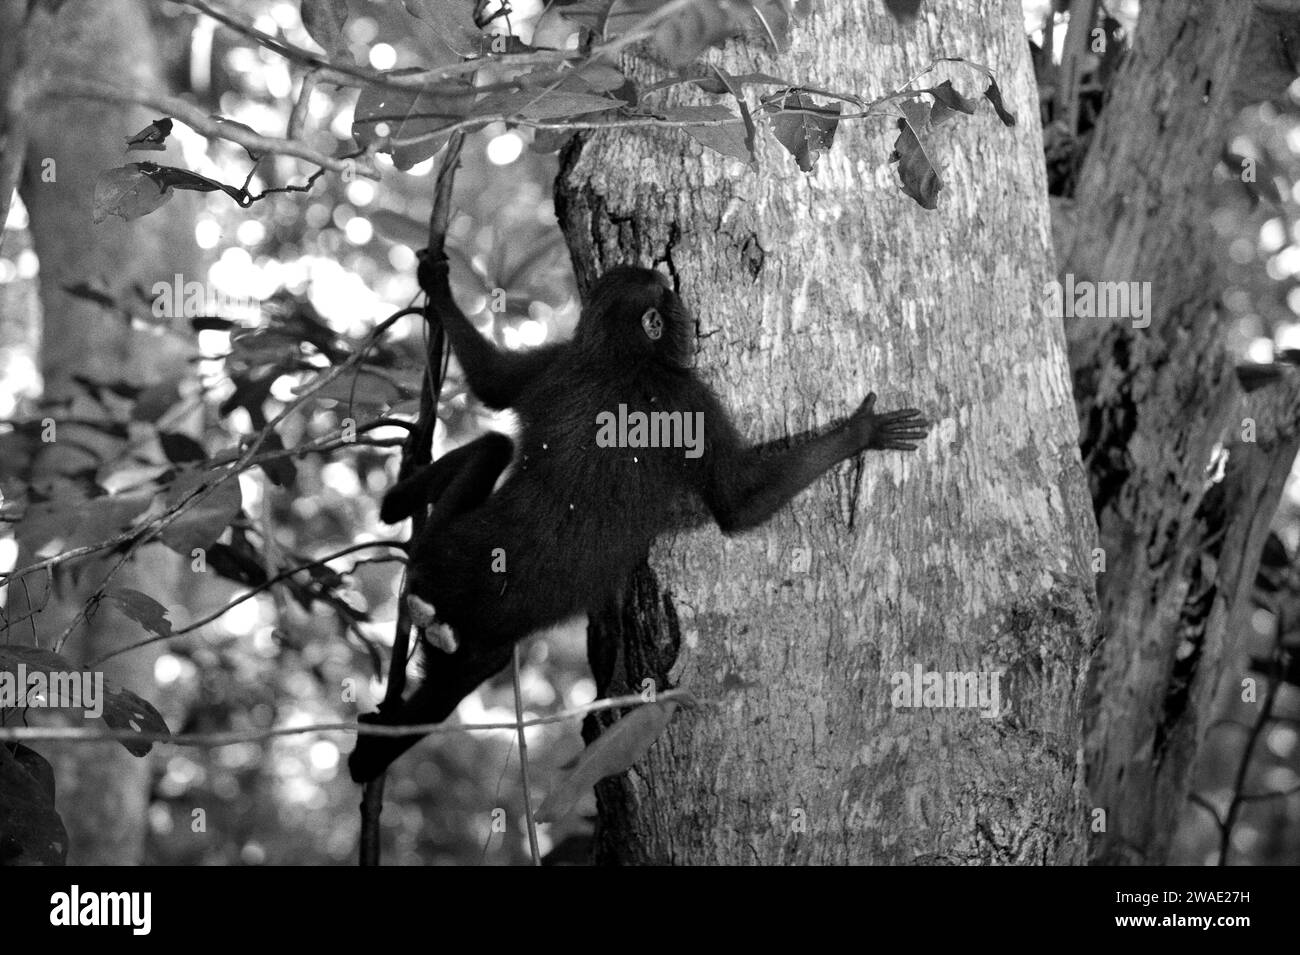 Ein Haubenmakaken (Macaca nigra) bewegt sich auf einem Baumstamm im Tangkoko-Wald in Nord-Sulawesi, Indonesien. Die Erhaltung von Primaten ist eine Herausforderung des Verhaltens und erfordert daher verhaltensorientierte Lösungen, so ein Team von Wissenschaftlern unter der Leitung von Harry Hilser in seinem 2023 veröffentlichten Artikel vom International Journal of Primatology. Sie müssten auch Eine ganzheitliche Strategie für Bildung, Kapazitätsaufbau und gemeindenahen Schutz nutzen, um Erkenntnisse aus verschiedenen sozialwissenschaftlichen Disziplinen sowie direkte Forschung mit Gemeinschaften in der Region zu nutzen, die ihre Kultur erforschen. Stockfoto